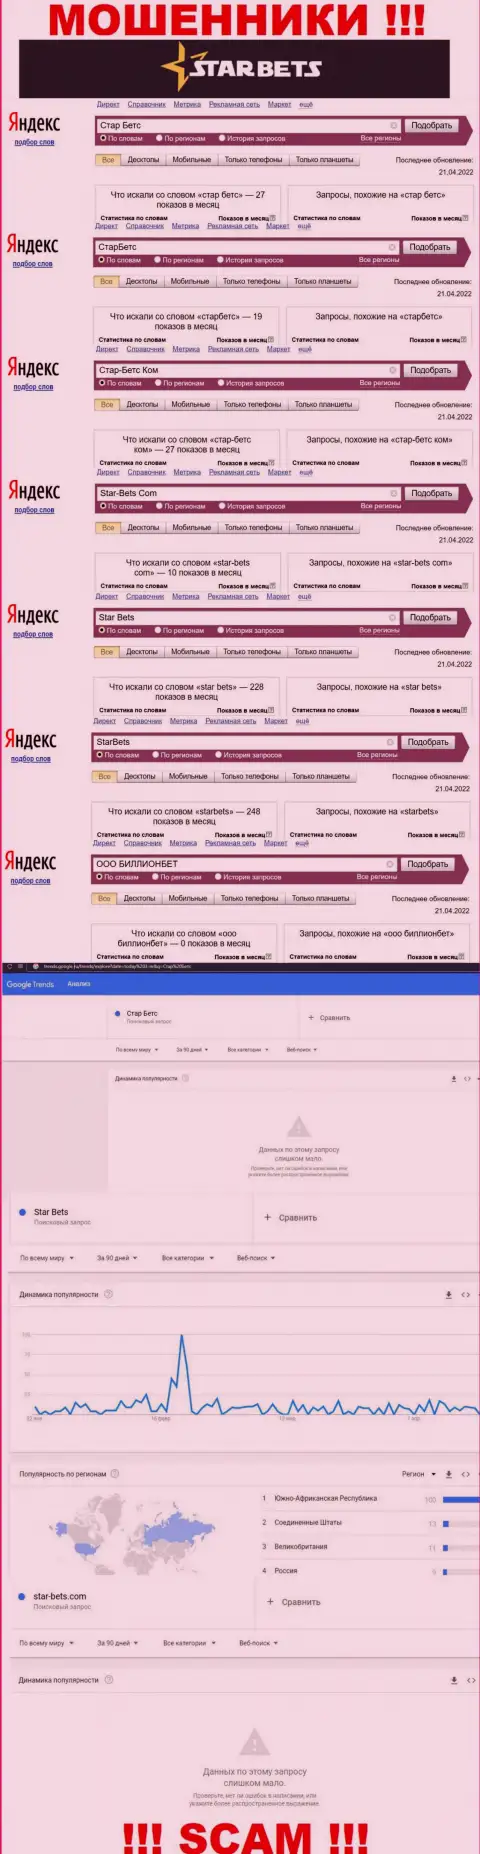 Скрин результатов online запросов по противозаконно действующей конторе StarBets